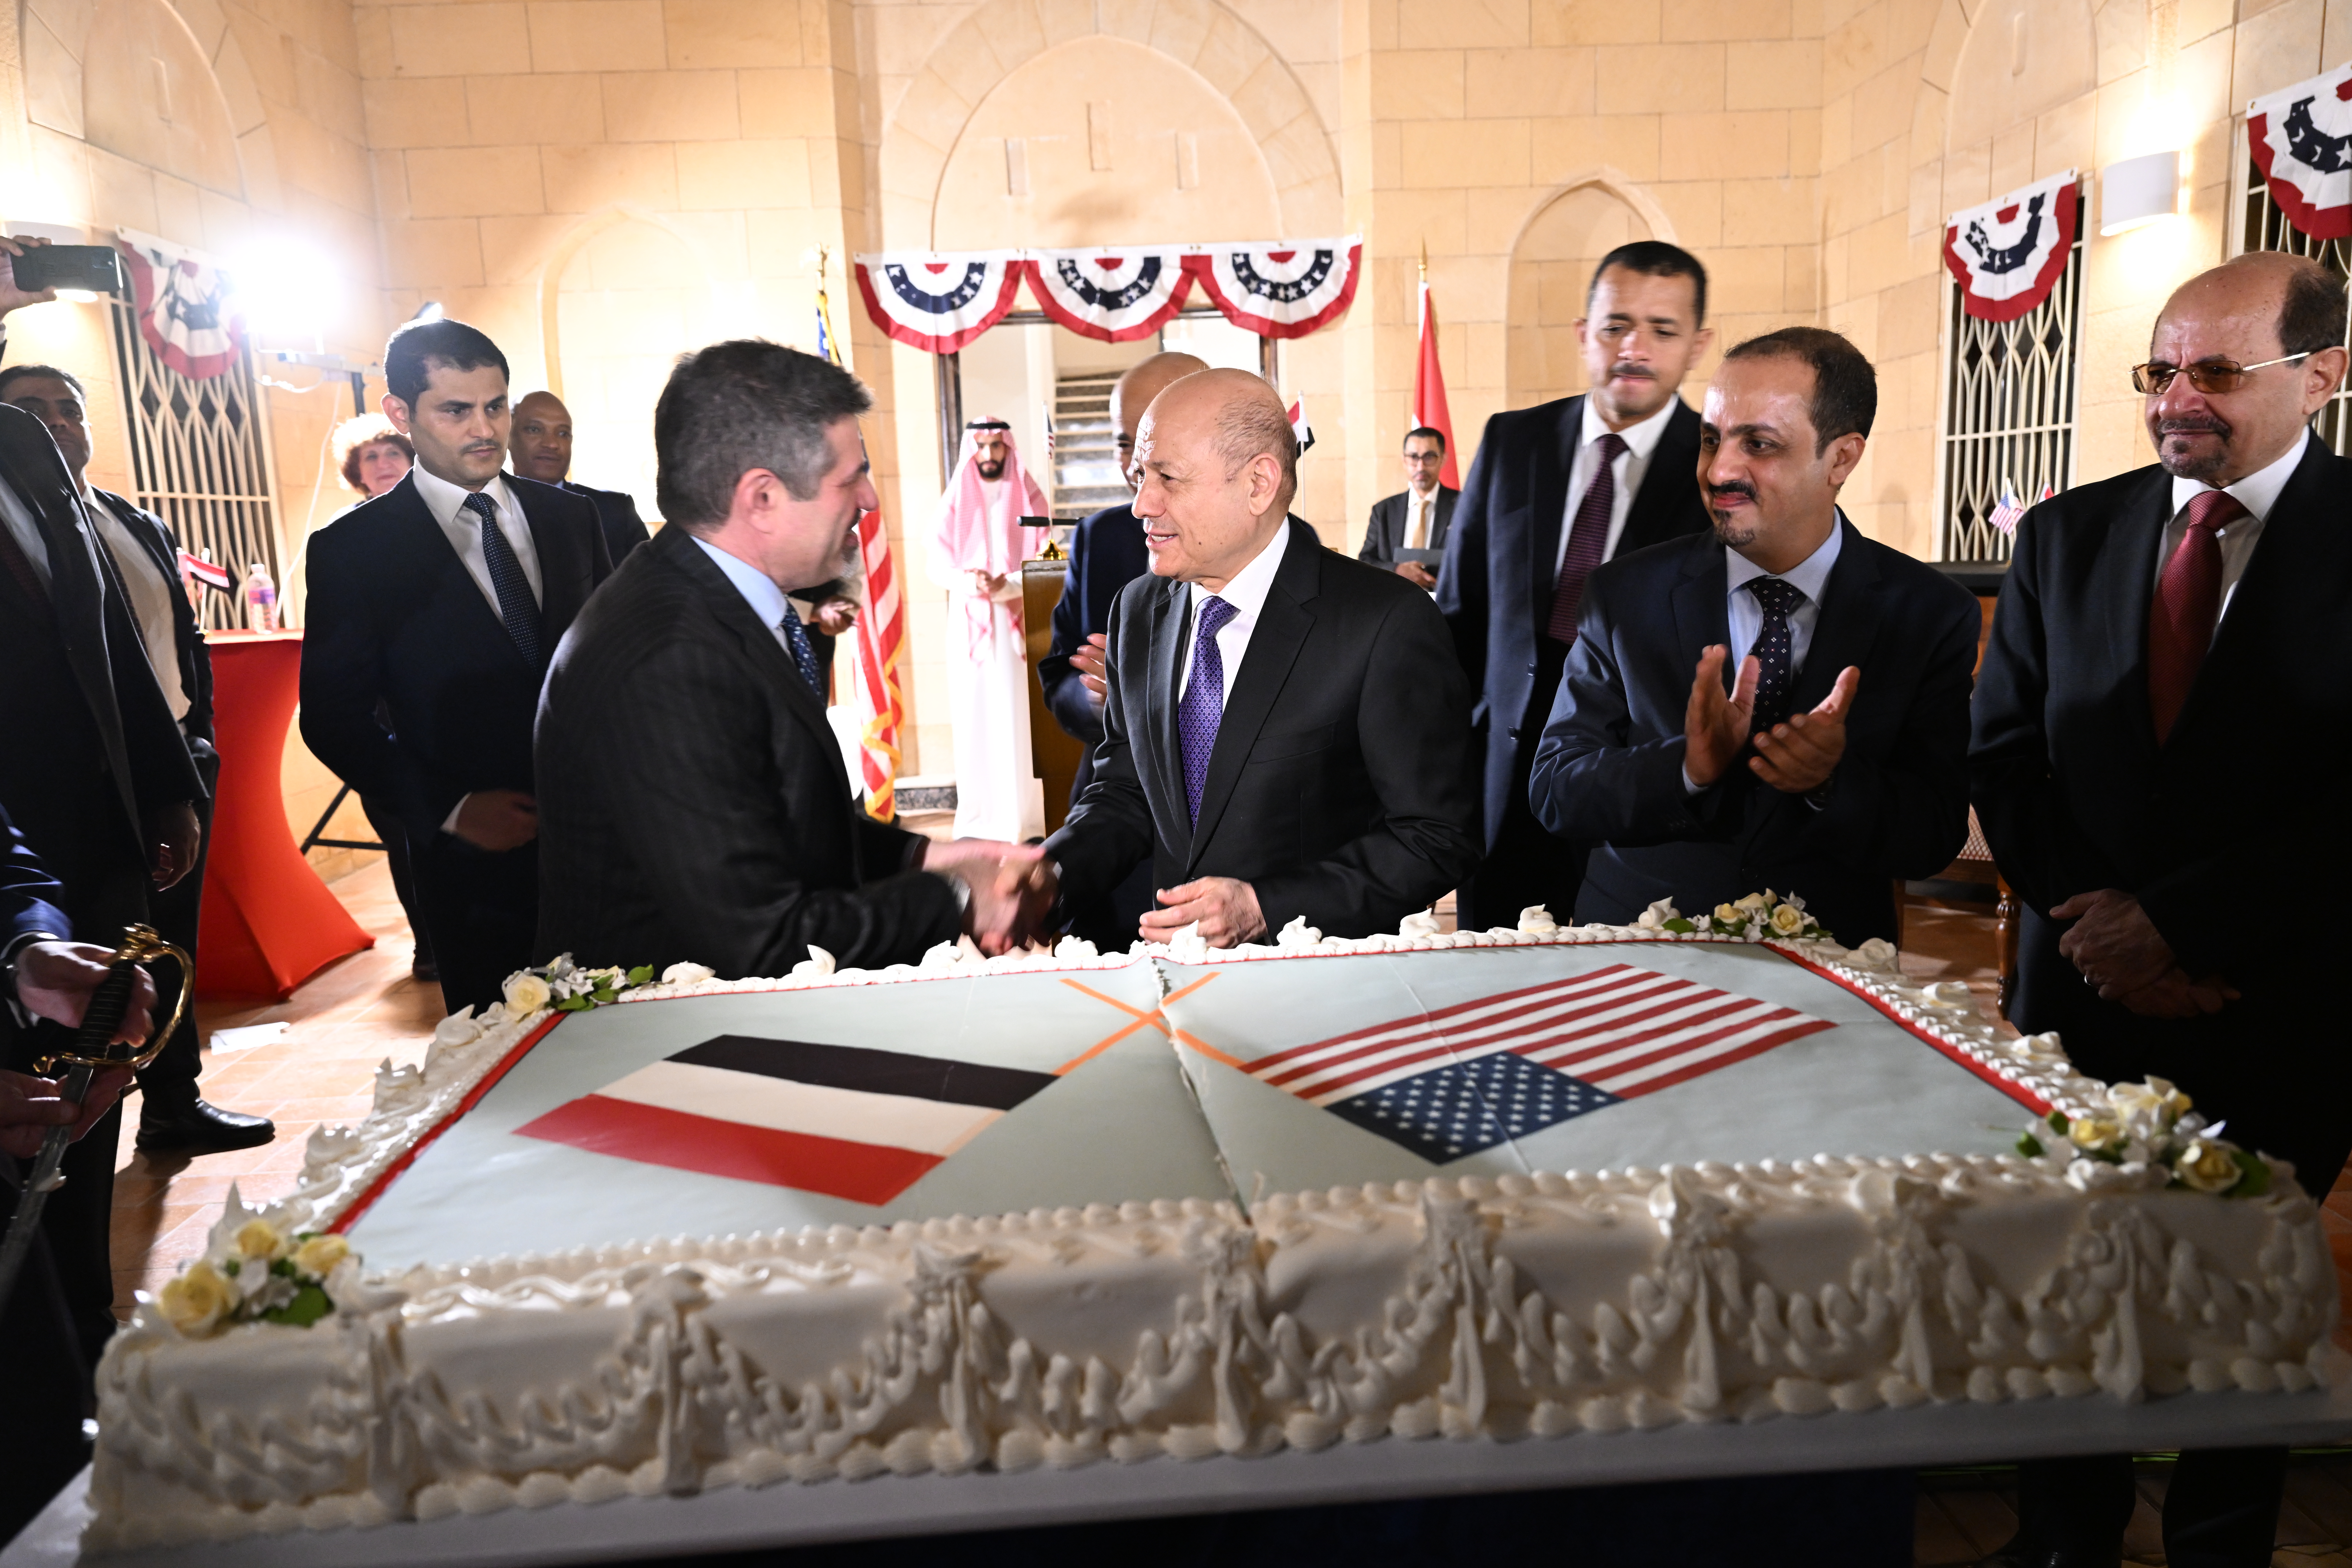 رئيس مجلس القيادة الرئاسي يشهد احتفالا بالذكرى 64 لتأسيس أول بعثة دبلوماسية أمريكية في اليمن